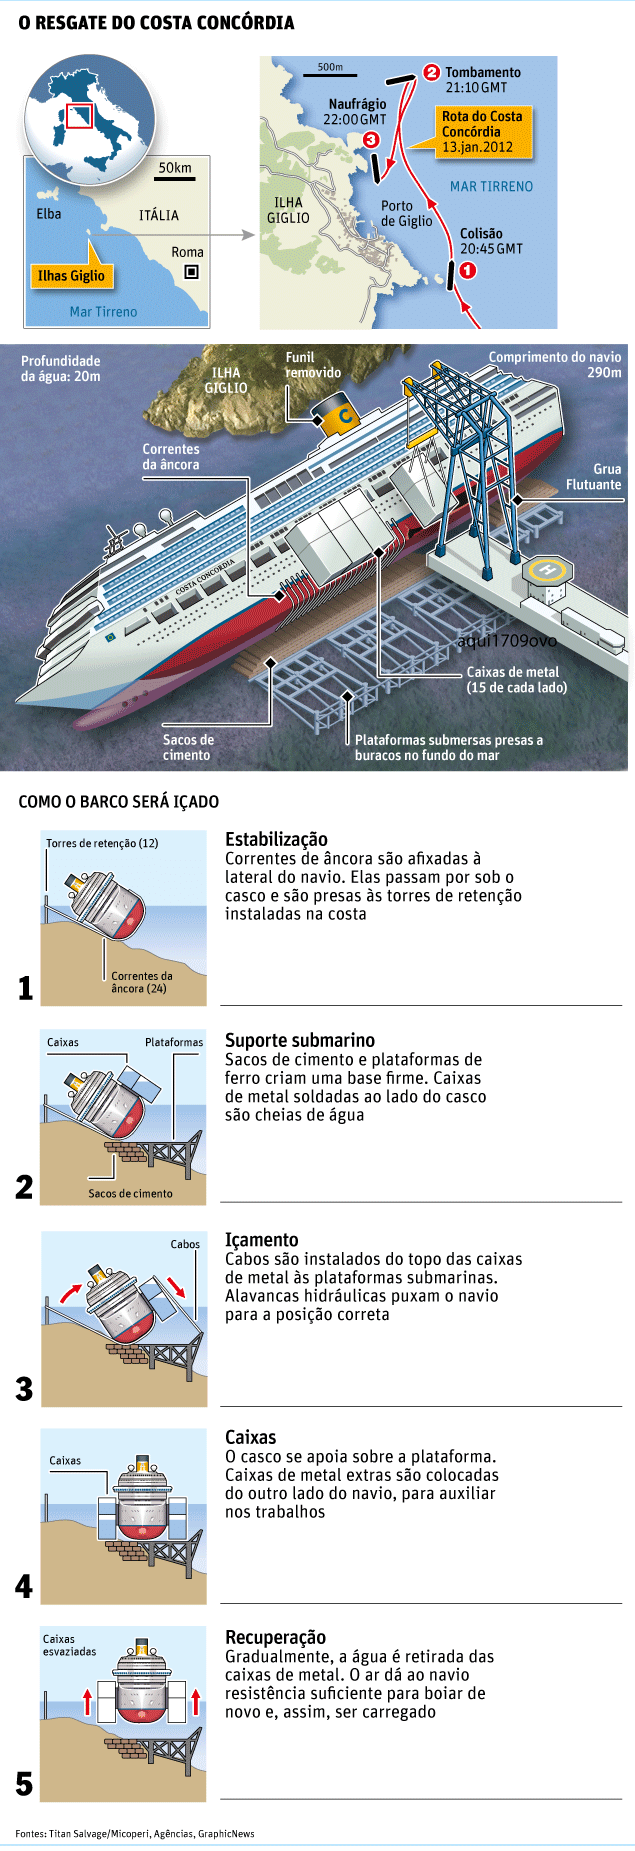 O resgate do Costa Concordia